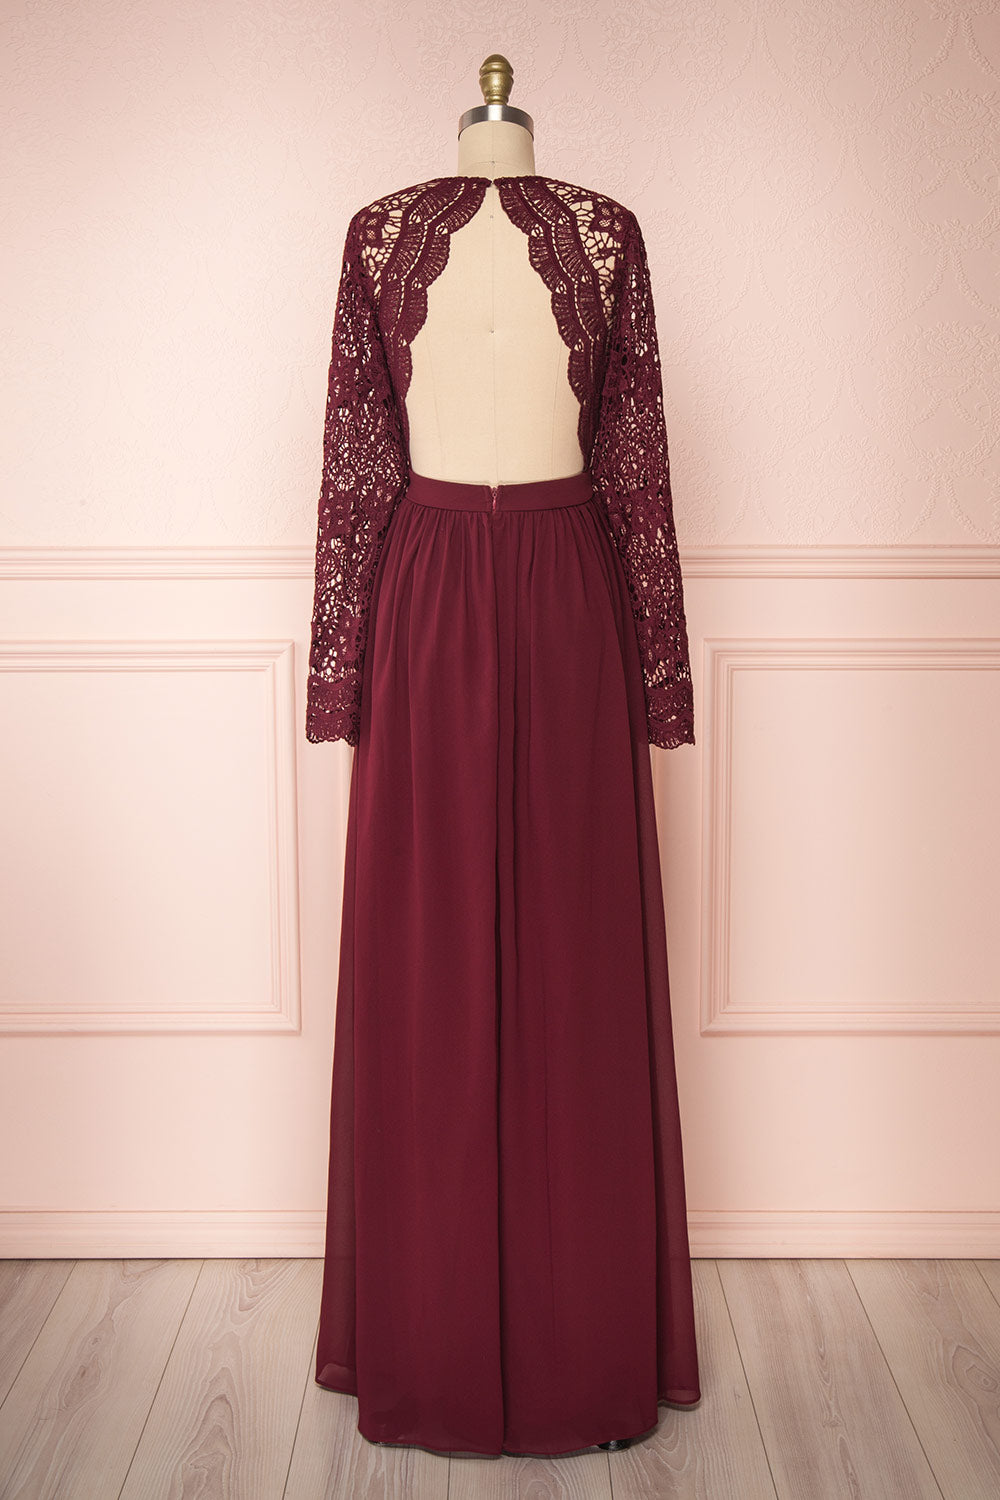 Dottie Burgundy Lace & Chiffon A-Line Gown | Boutique 1861 back view 